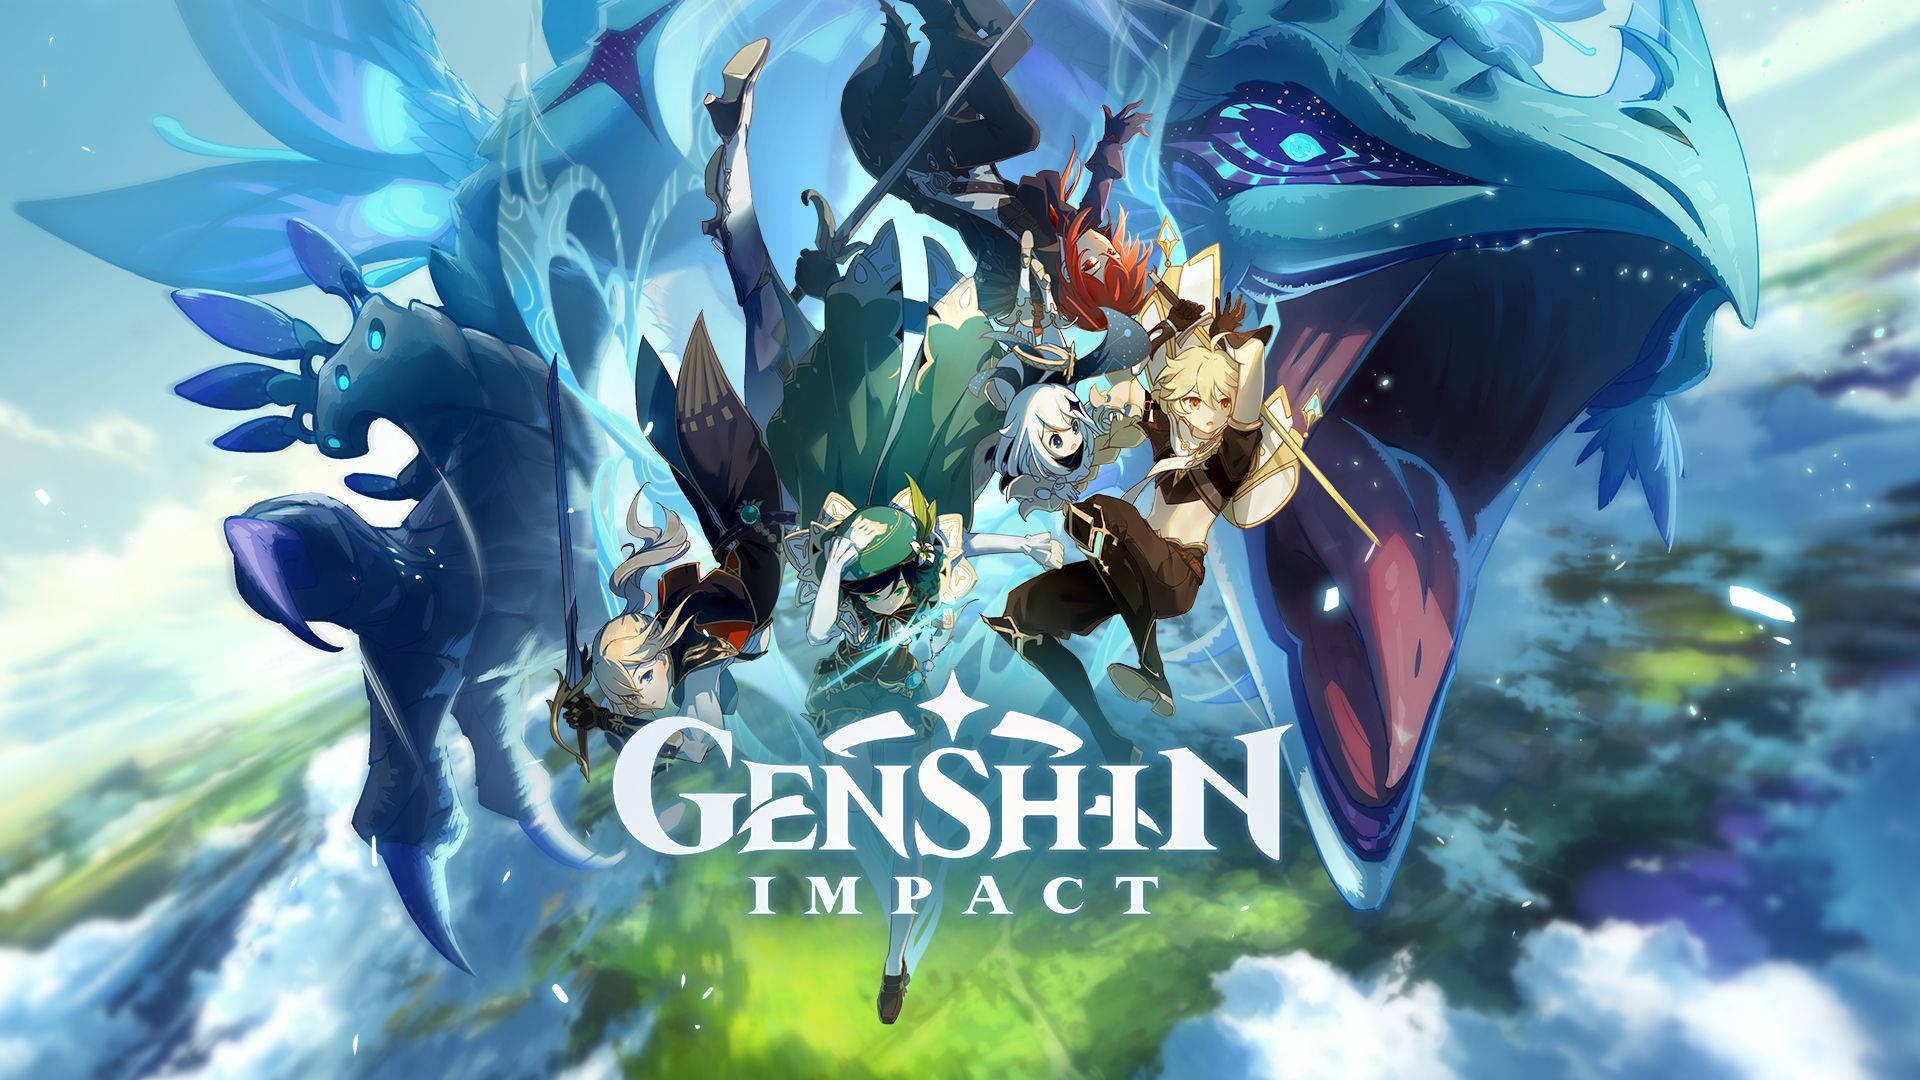 Tải về miễn phí hình nền Genshin Impact và thưởng thức những khoảnh khắc đẹp nhất của game. Với sự đa dạng và độc đáo của những tấm hình, bạn sẽ được trải nghiệm thế giới Genshin theo nhiều cách khác nhau và khám phá nhiều hơn về những nhân vật độc đáo của game.